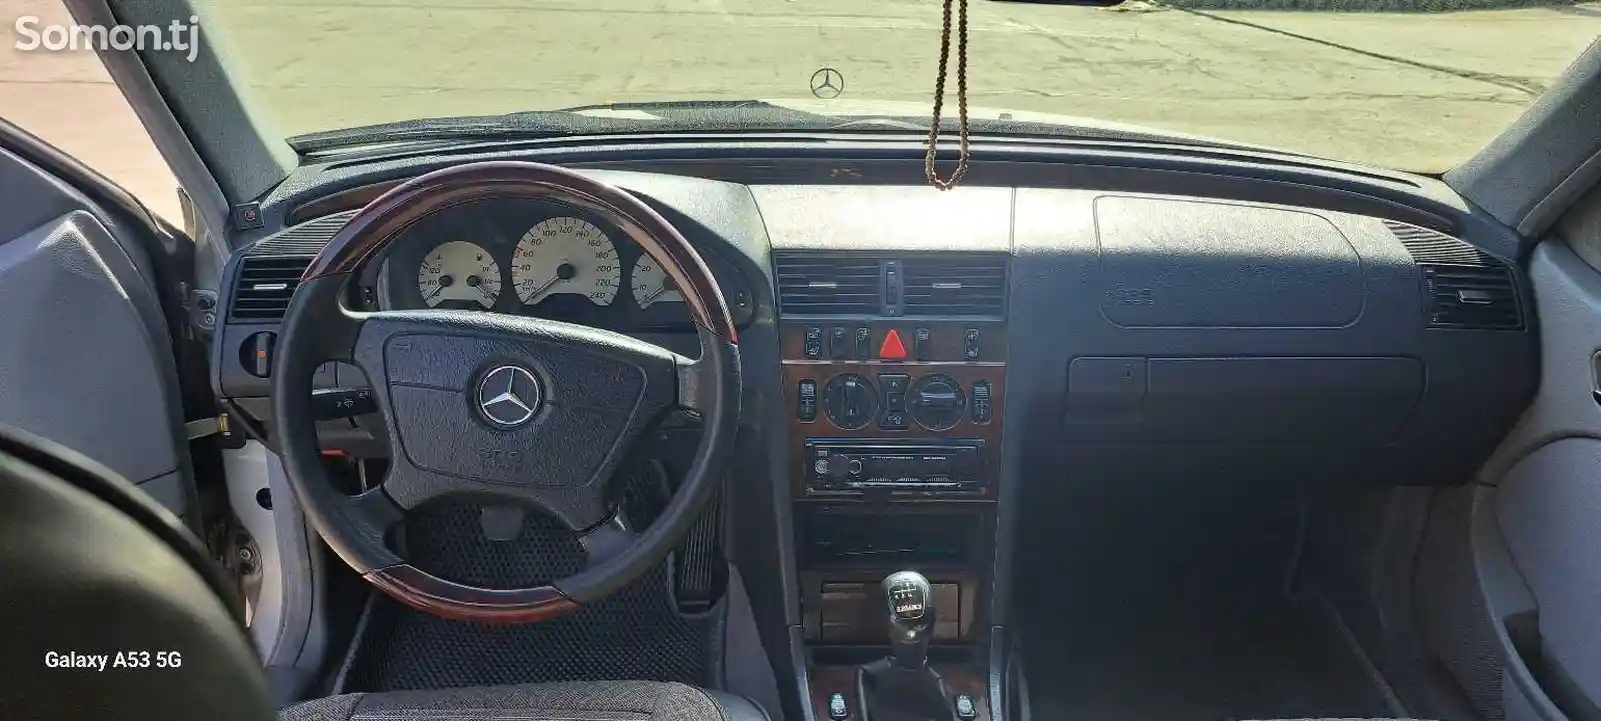 Mercedes-Benz C class, 1999-6